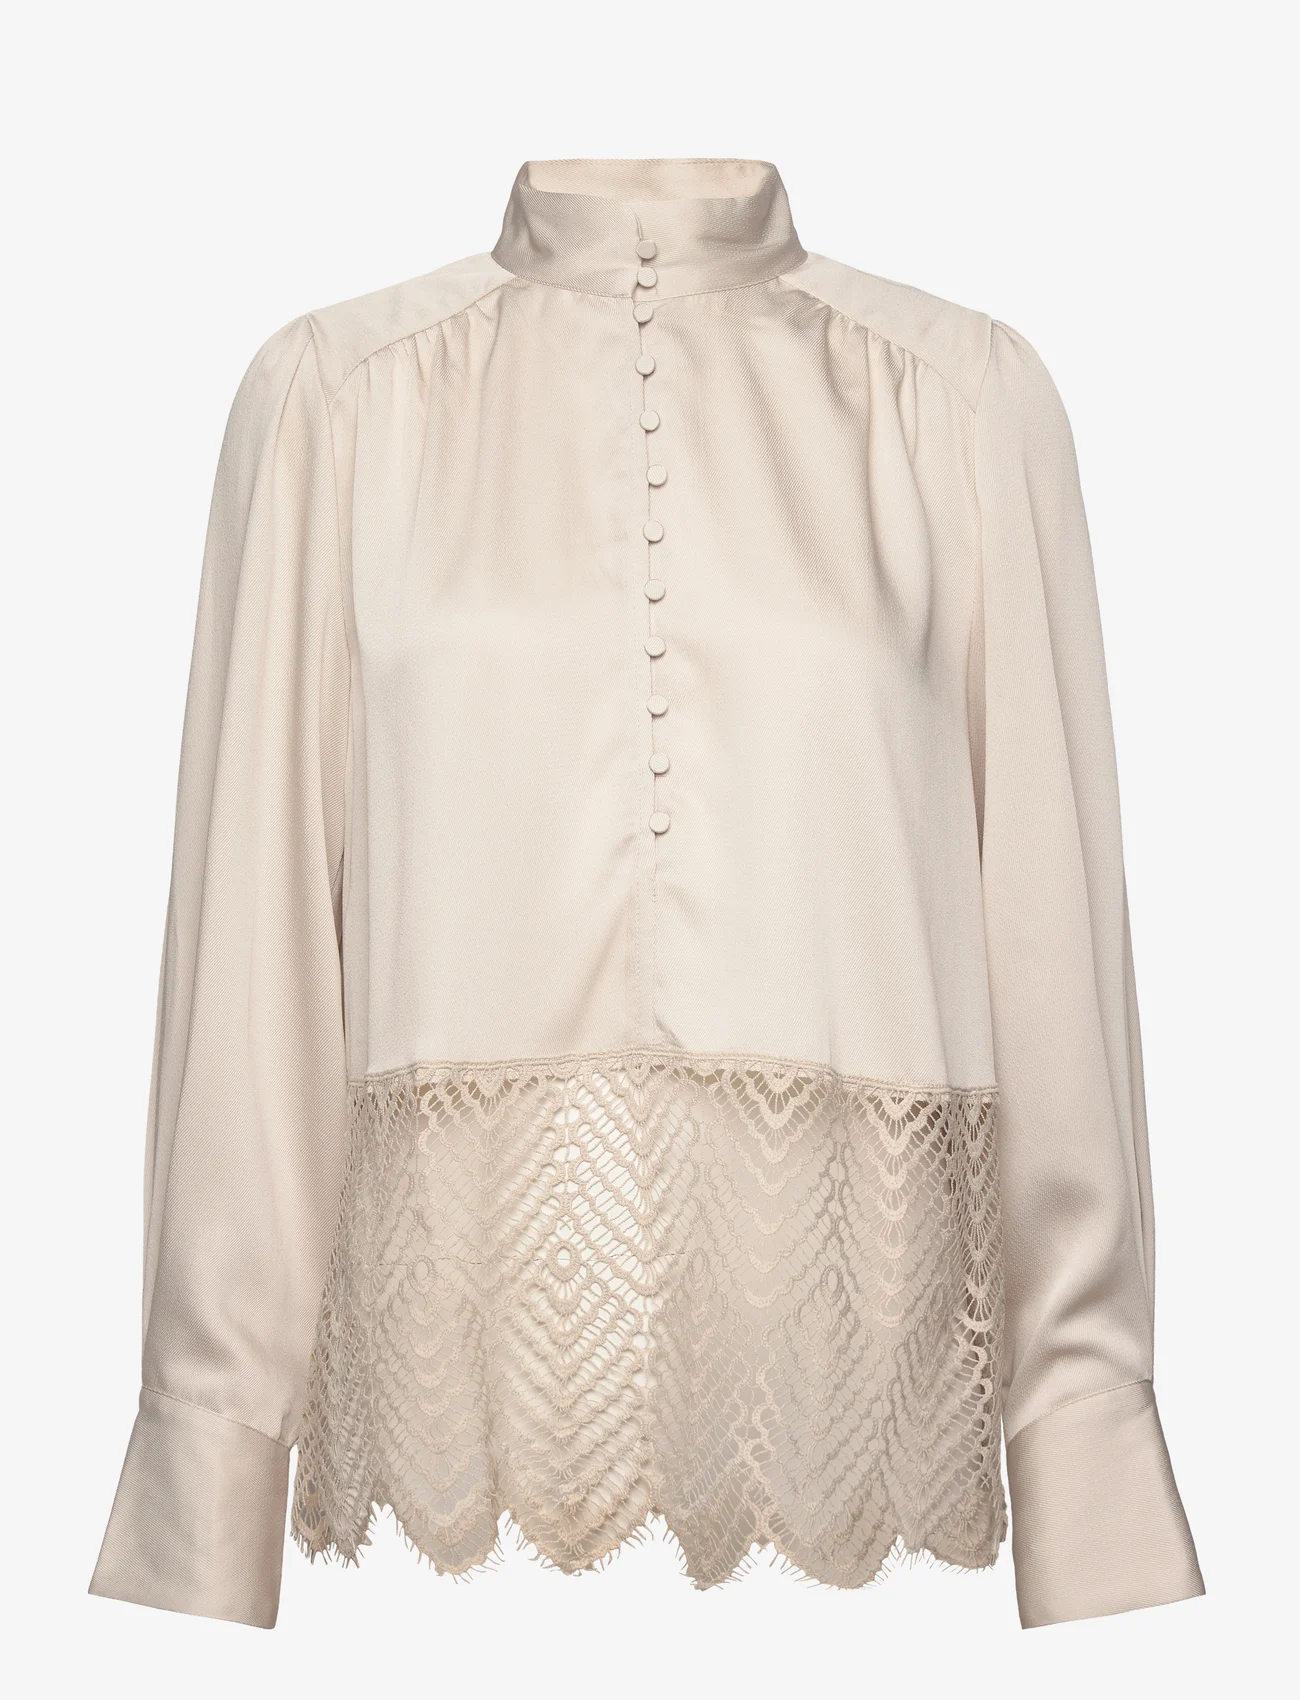 Bruuns Bazaar - CedarsBBChatrina blouse - långärmade blusar - kit - 0